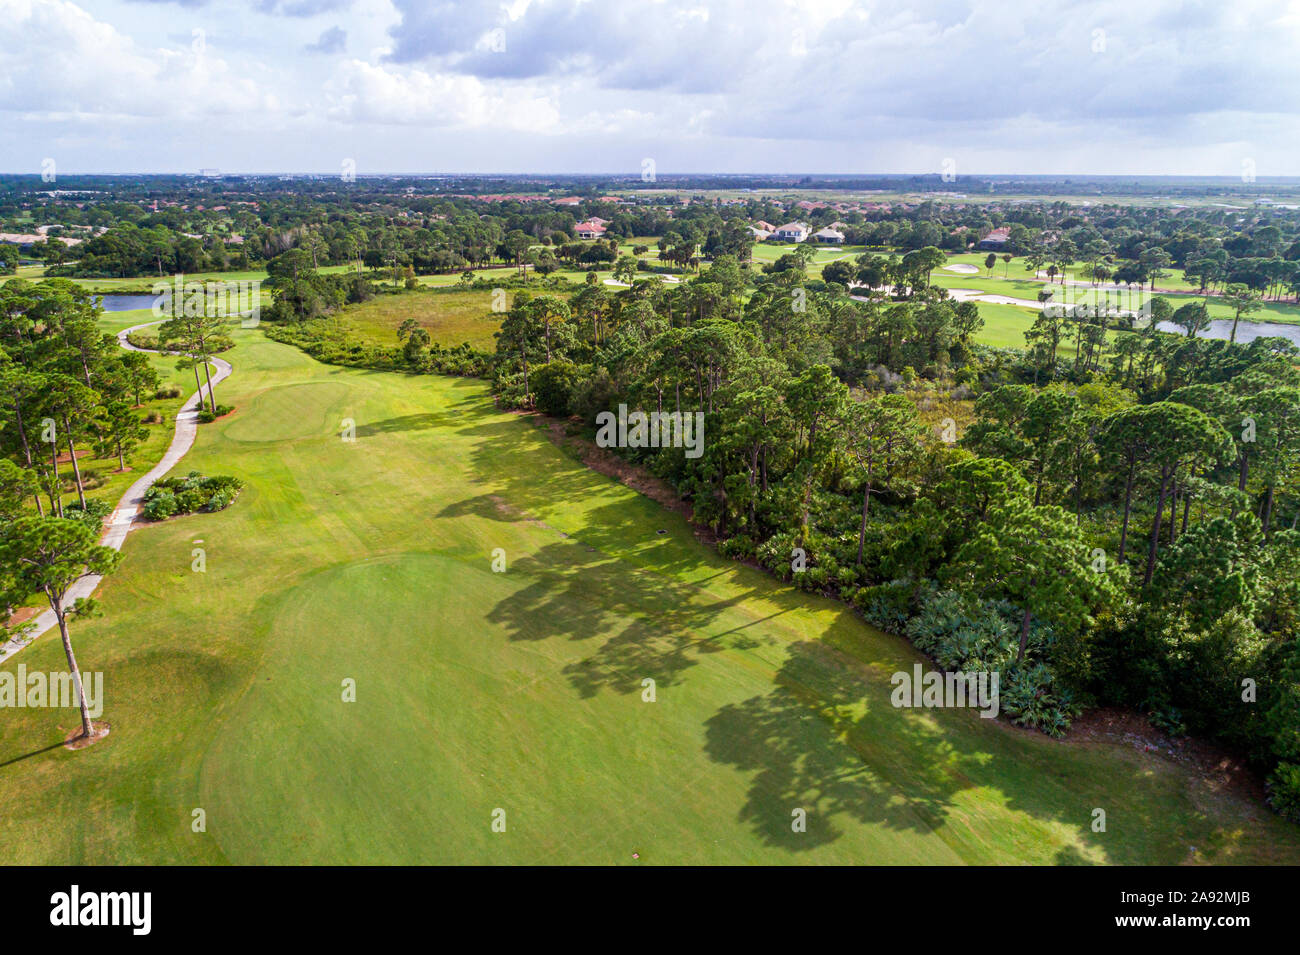 Floride, Port Pt Saint St Lucie, PGA Golf Club à PGA Village, parcours de golf Fairway AERIAL, FL190916d02 Banque D'Images